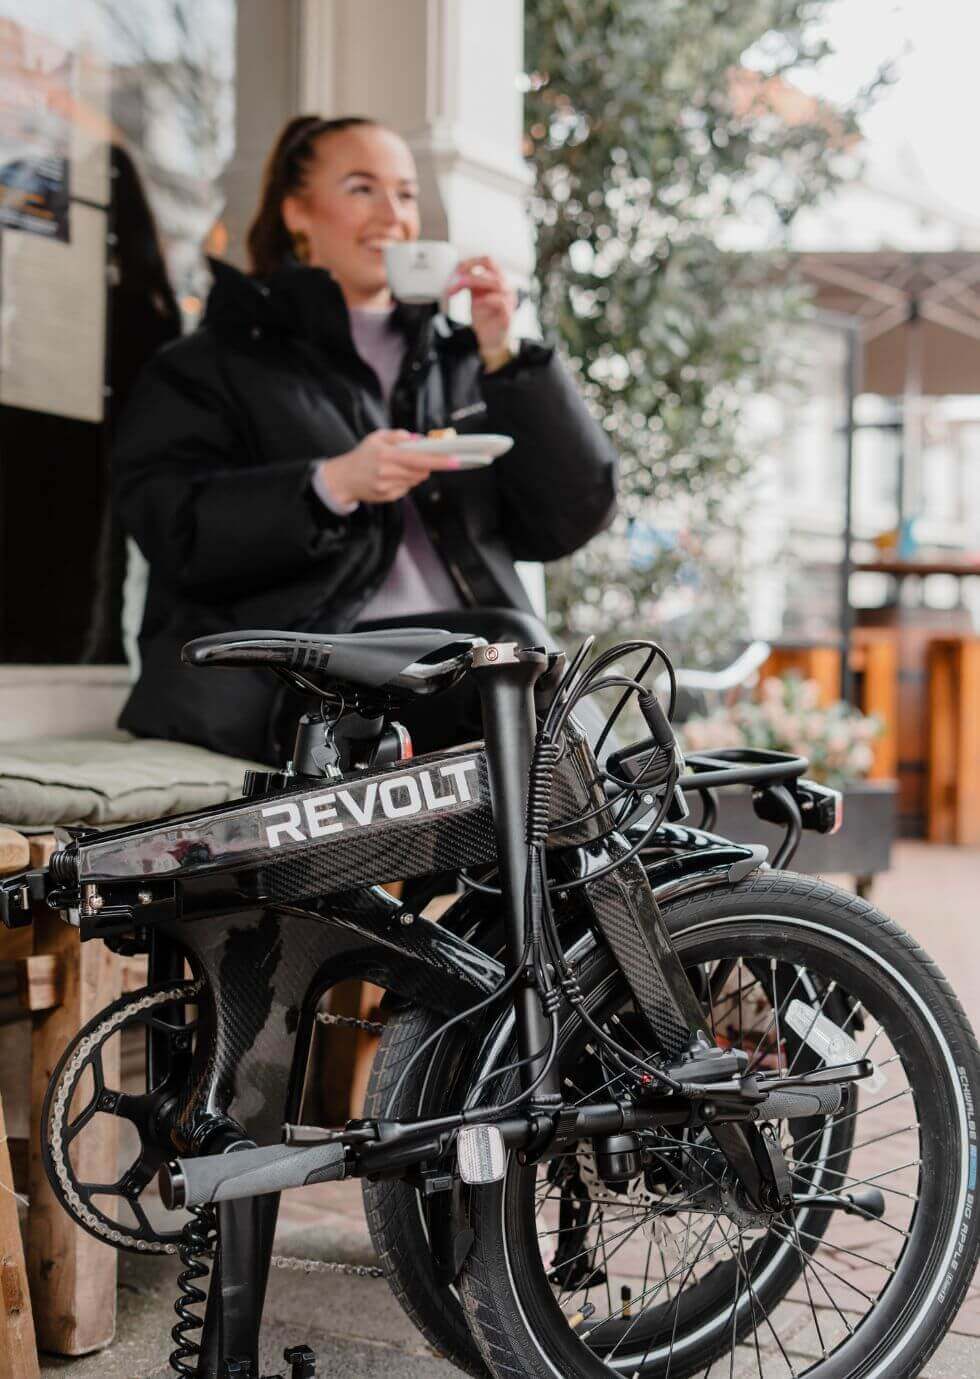 Revolt opvouwbare e-bikes: Kwaliteit en prestaties die de investering waard zijn